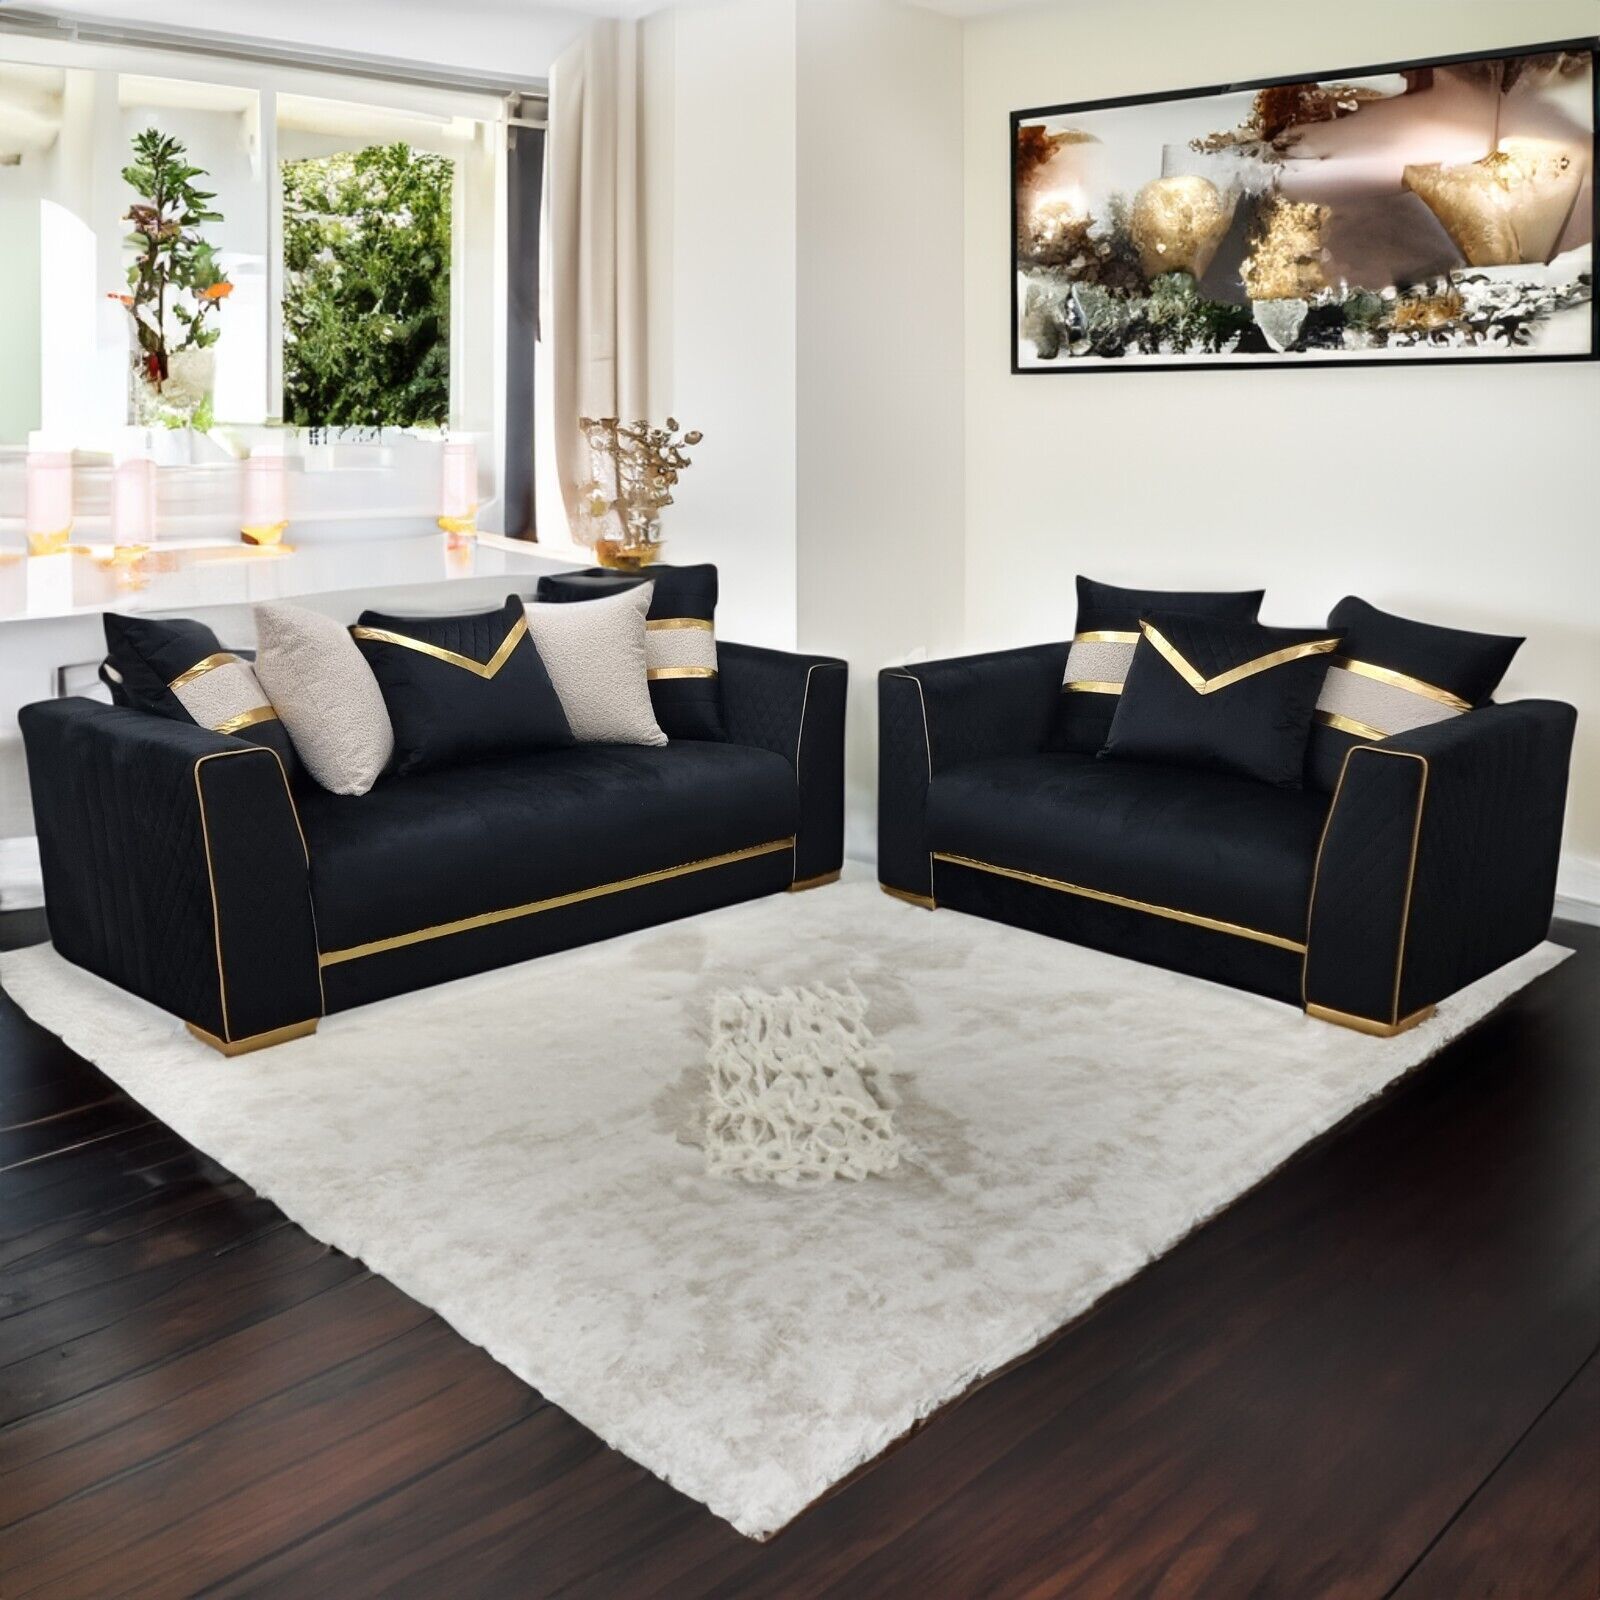 Furnituredw Empire 3 & 2 Seater Velvet Sofa Set Black & Gold For Living  Room | Ebay Regarding Sofas In Black (View 7 of 15)